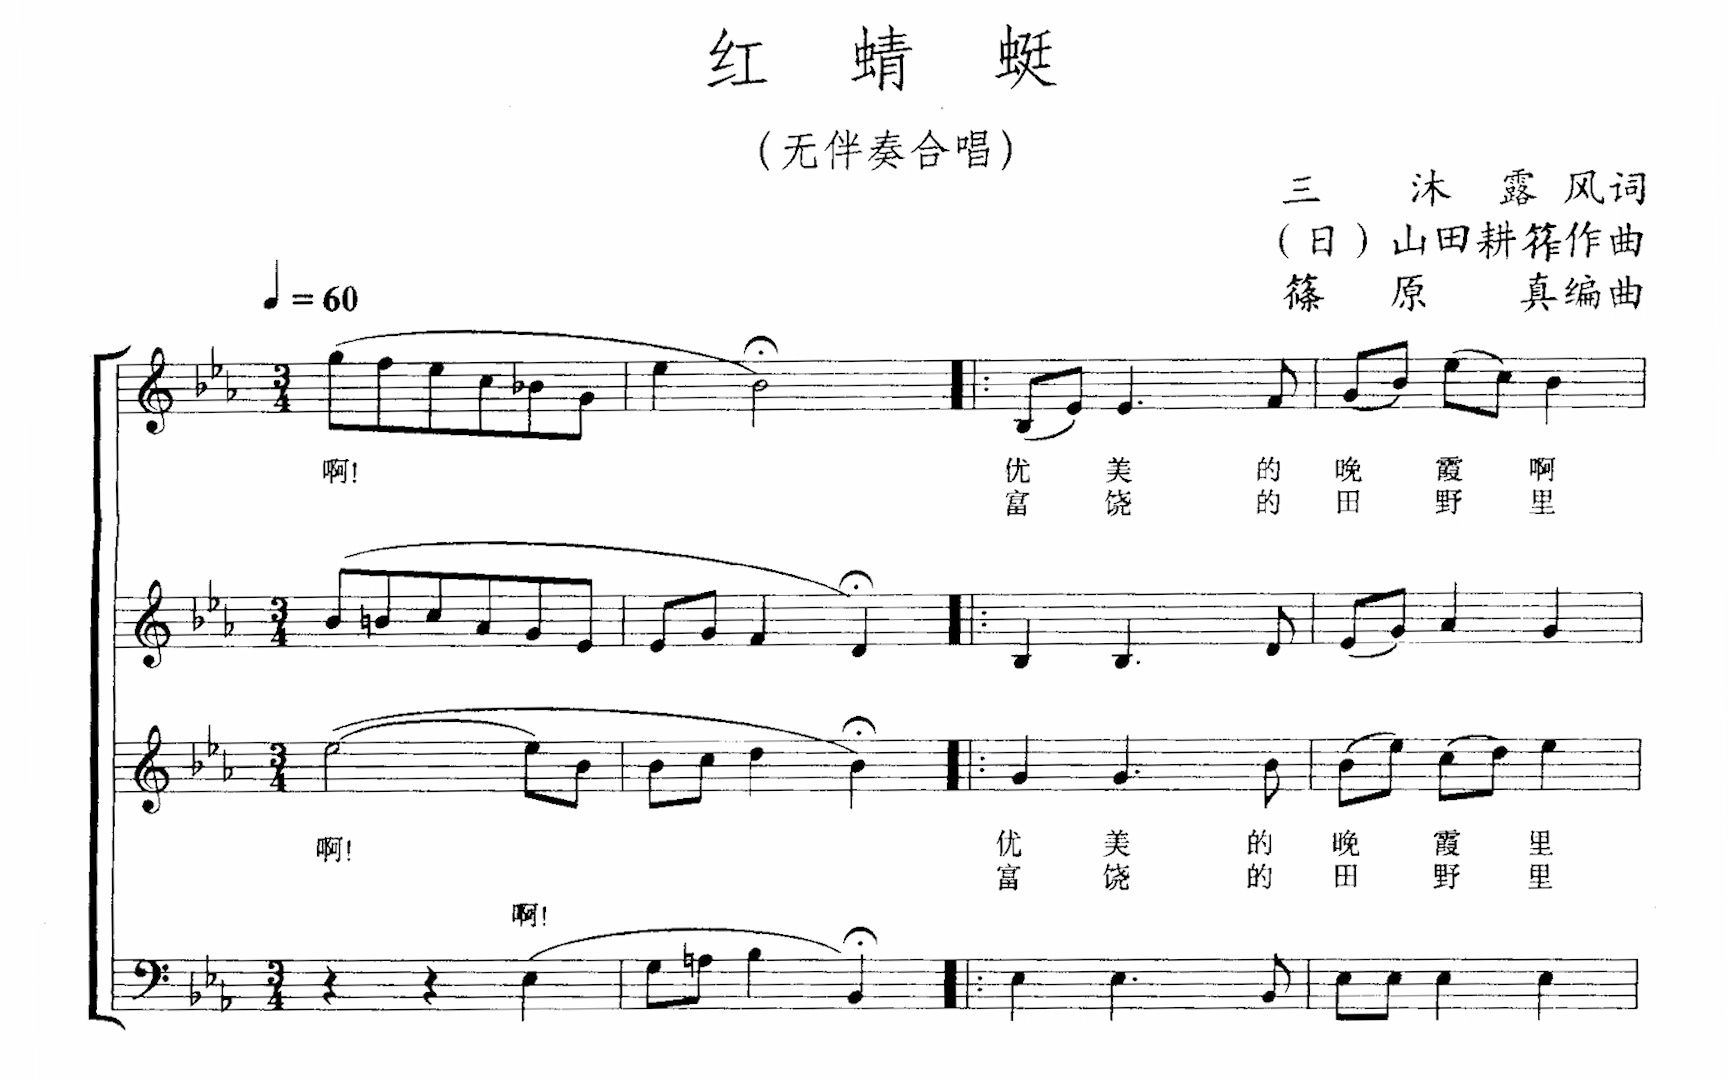 无伴奏混声合唱《红蜻蜓》东京混声合唱团 田中信昭指挥